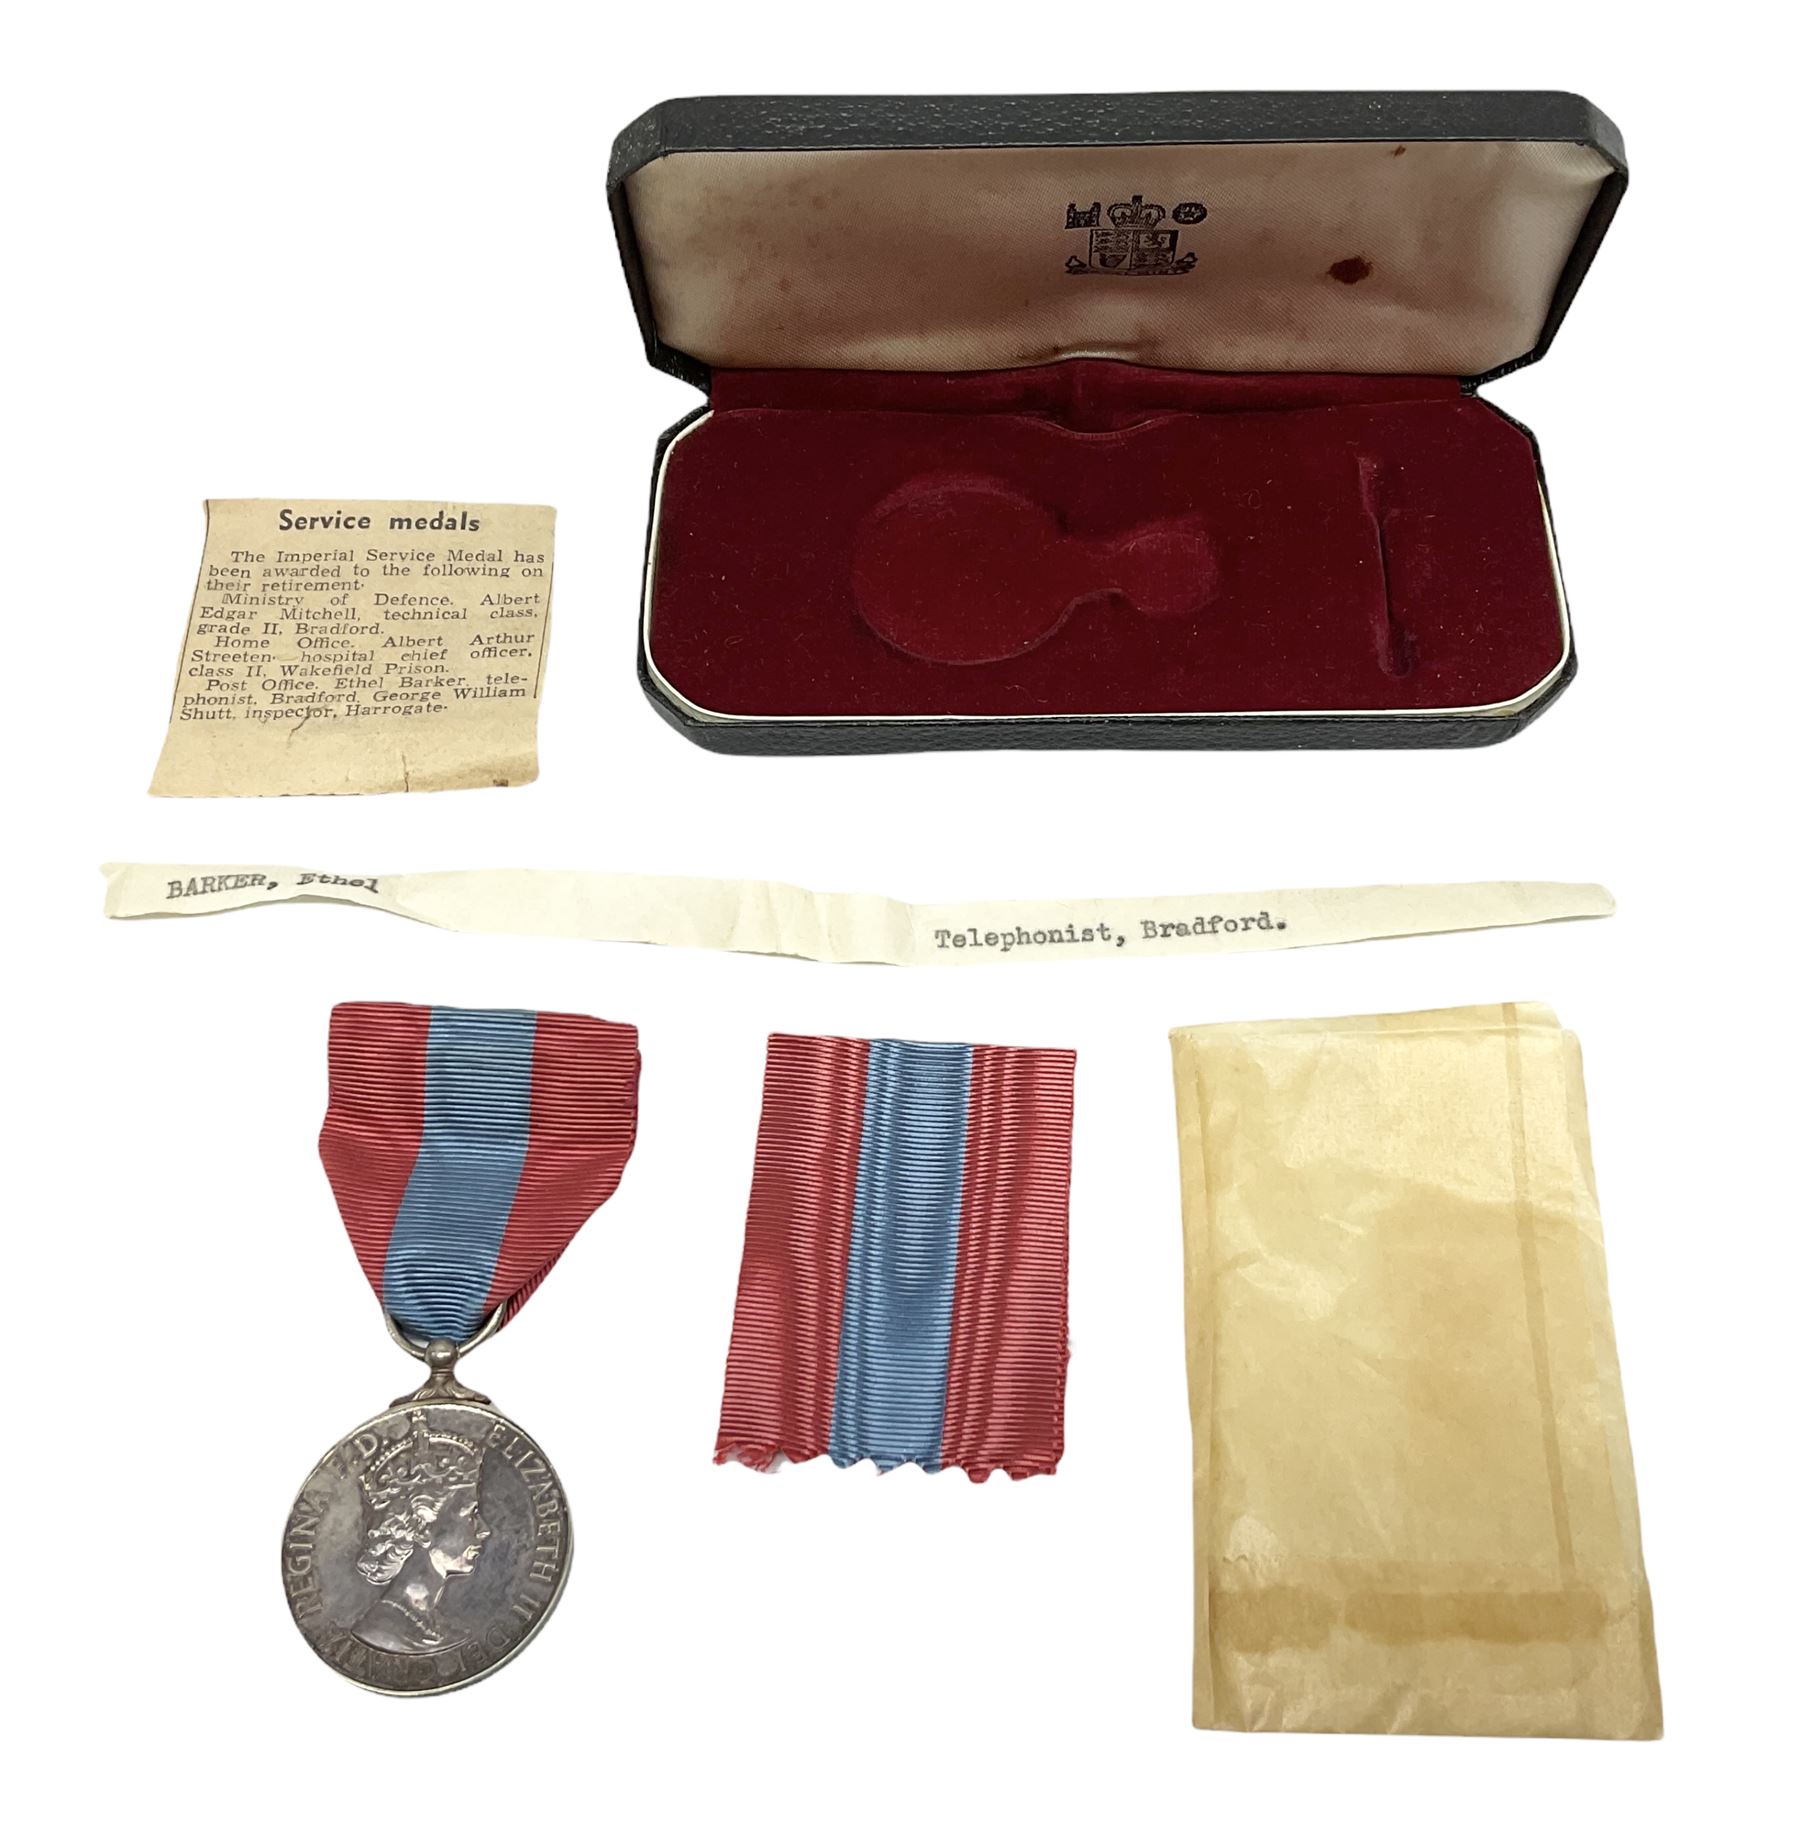 Case engraved Imperial Service Medal for civilian Ethel Barker